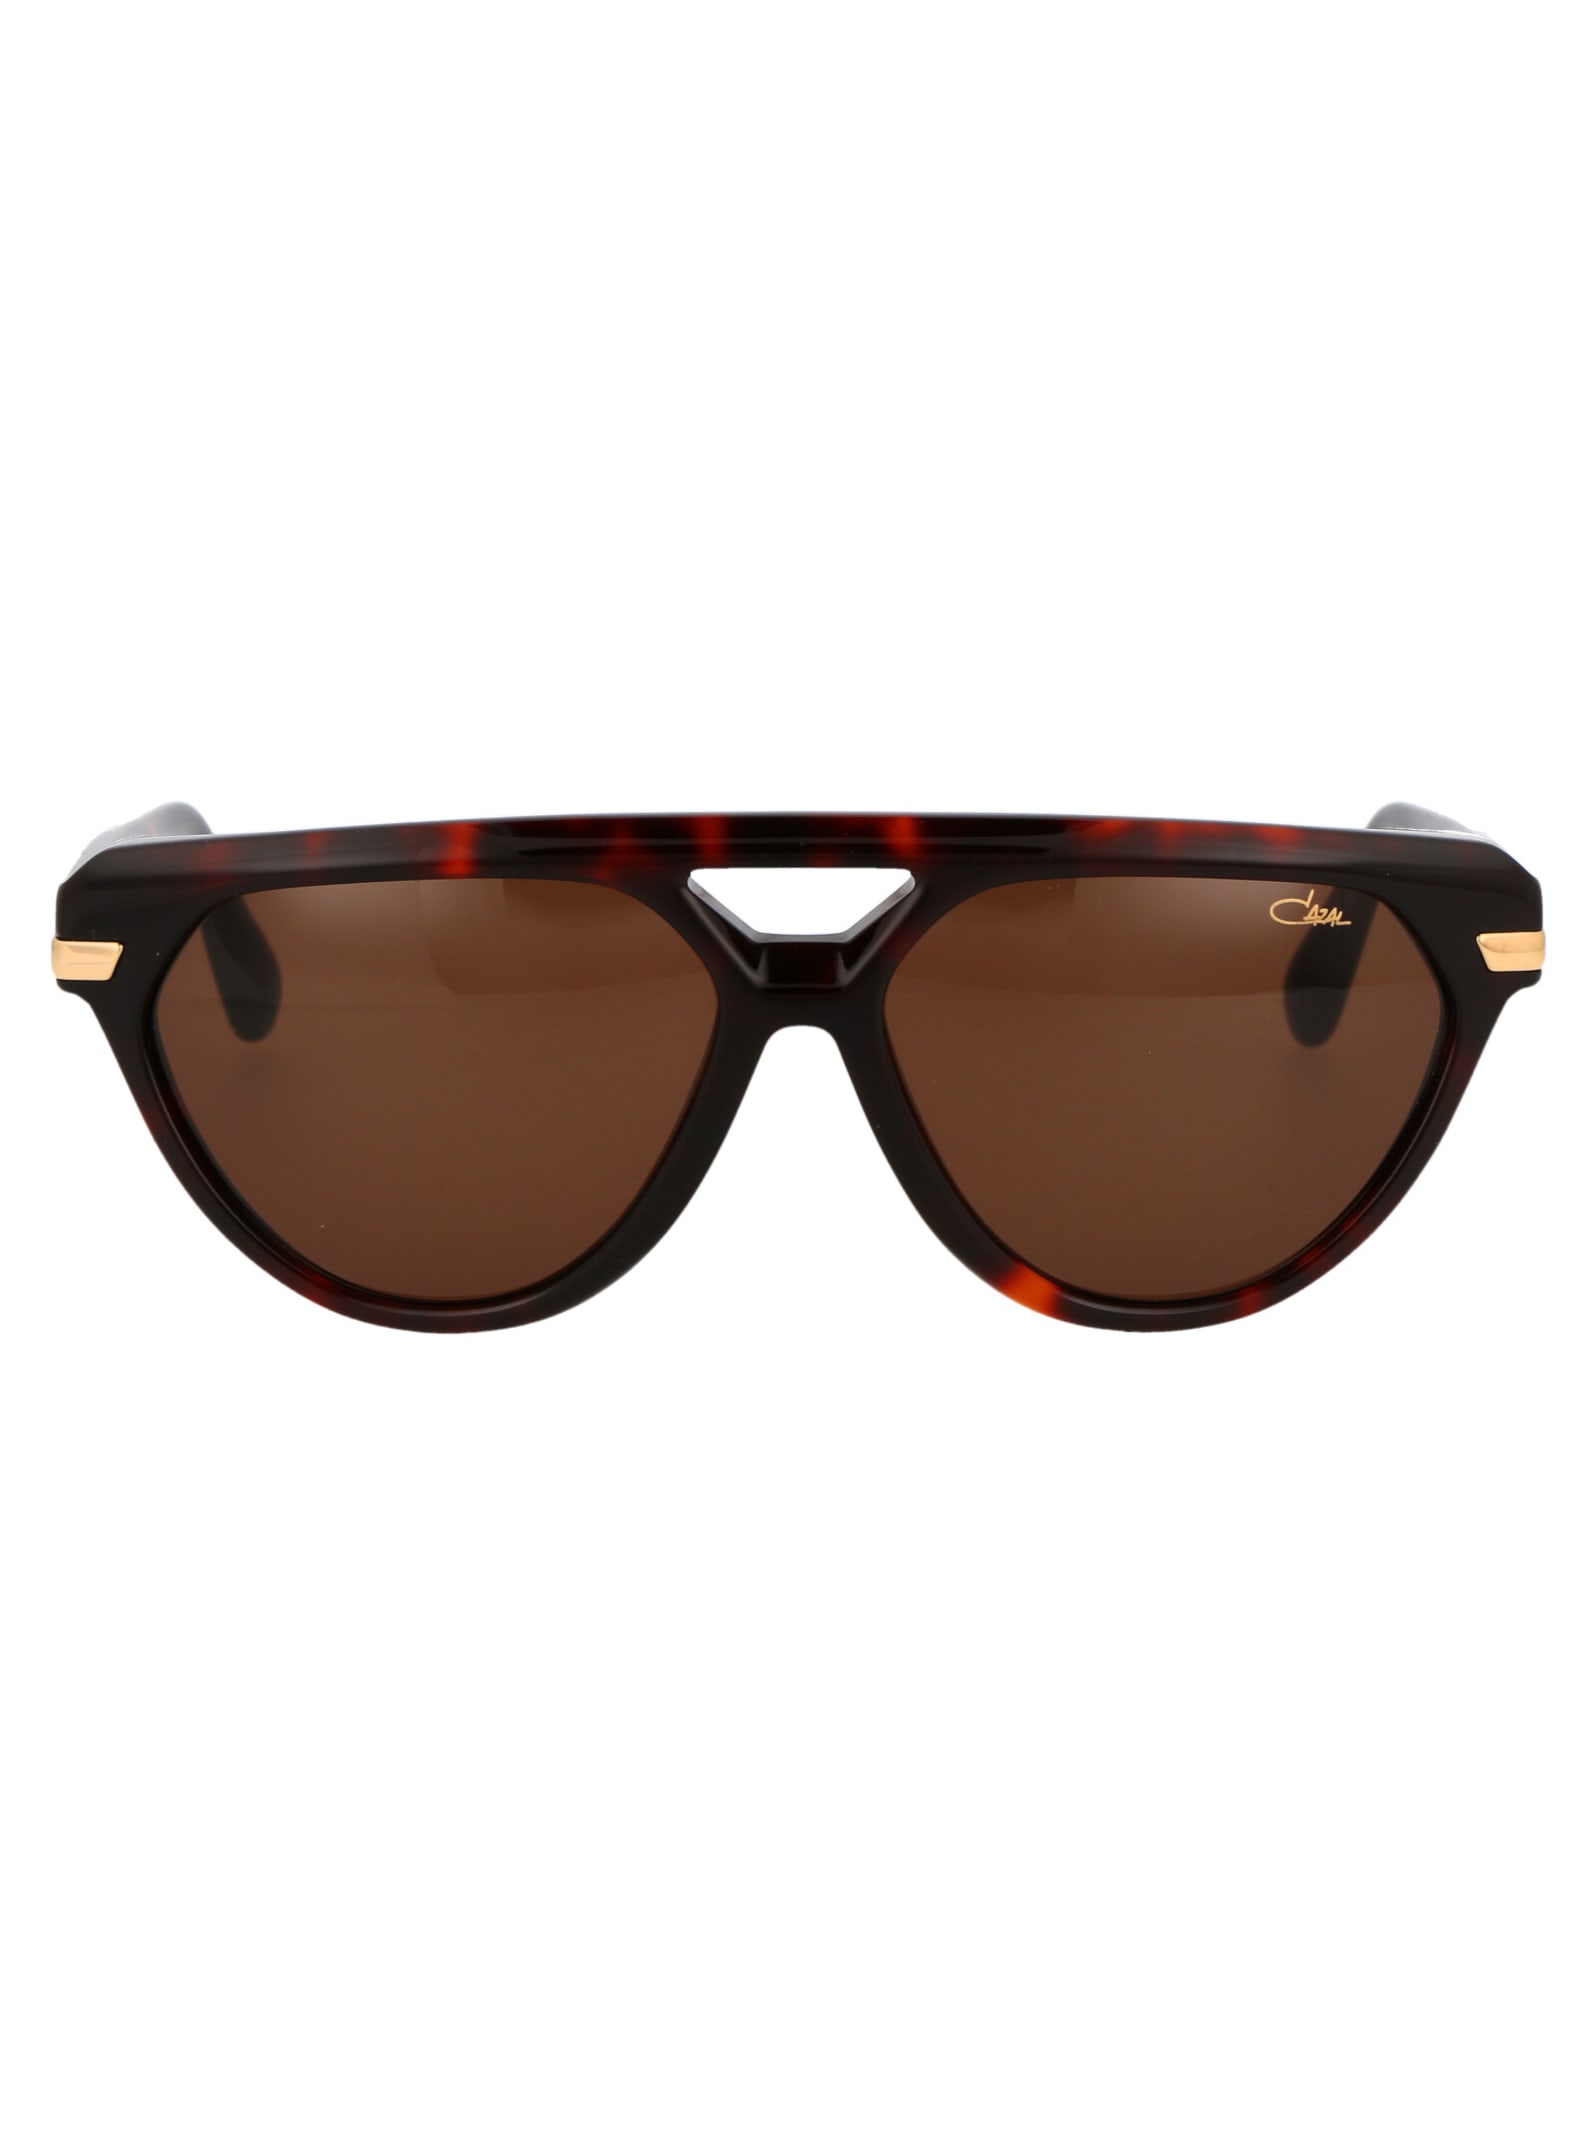 Mod. 8503 Sunglasses